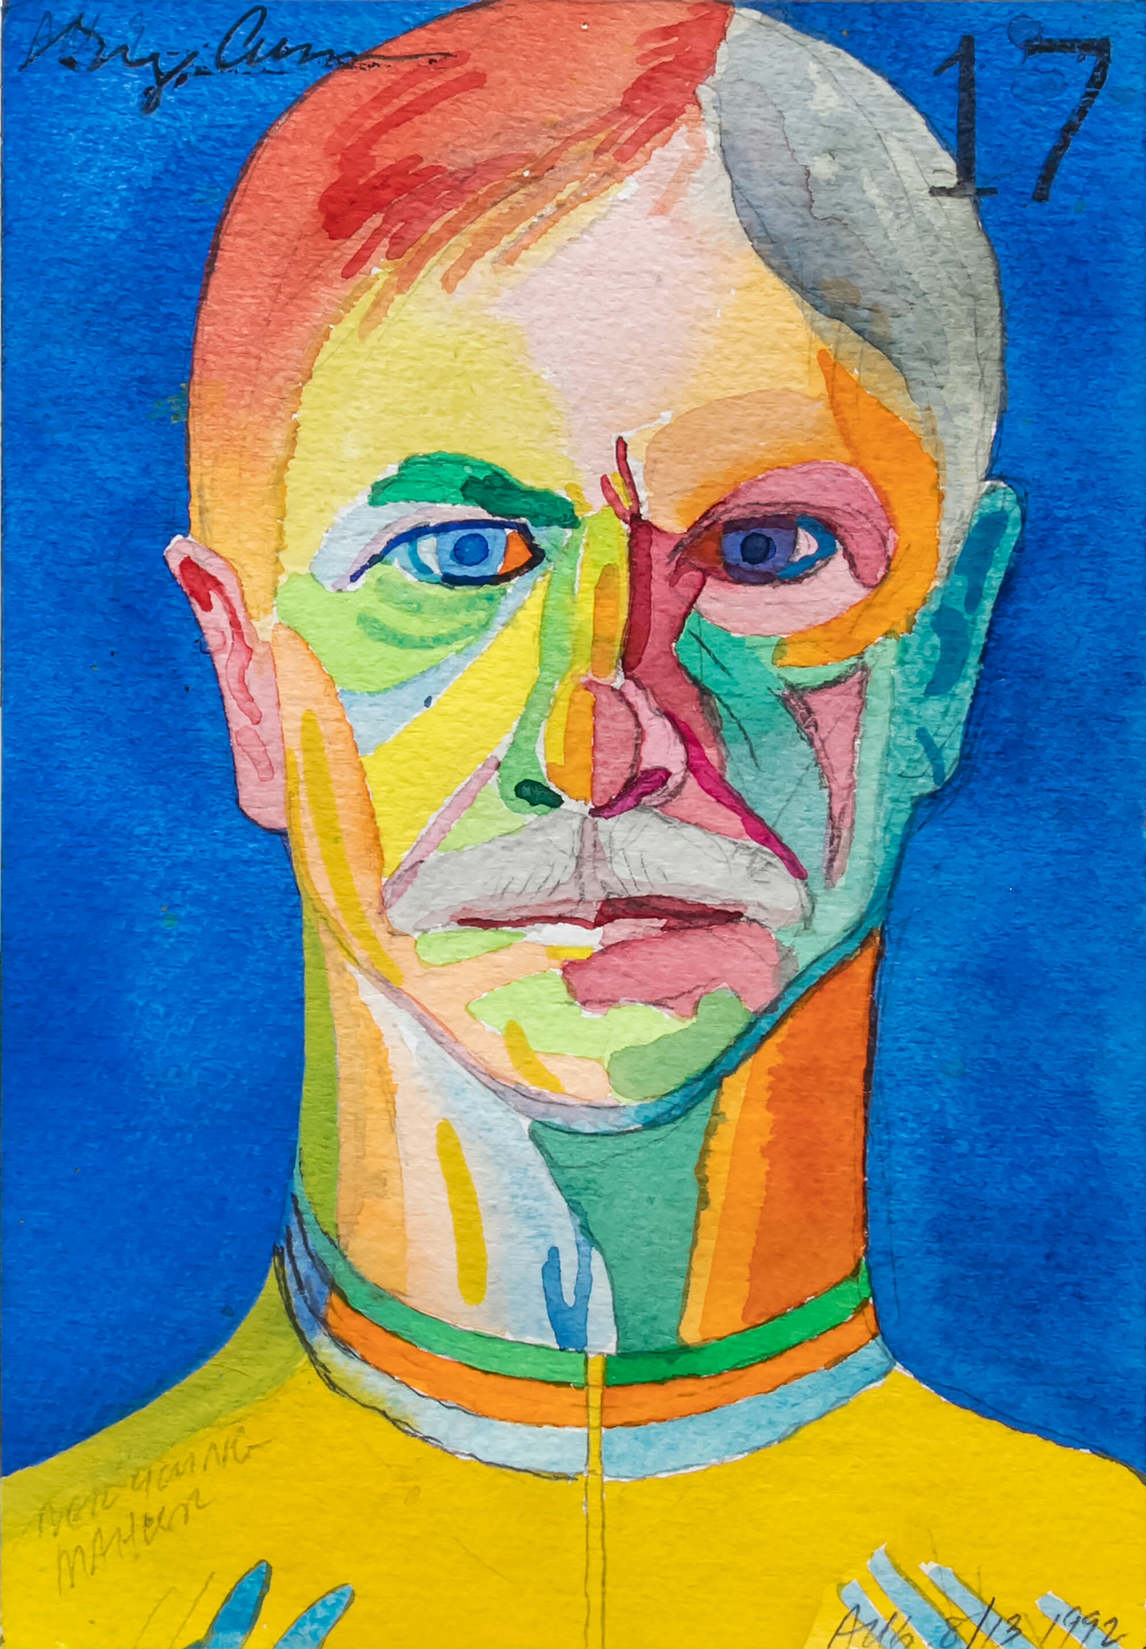 Art Canada Institute, Greg Curnoe, Self-Portrait #17 (Autoportrait #17), 8 août 1992